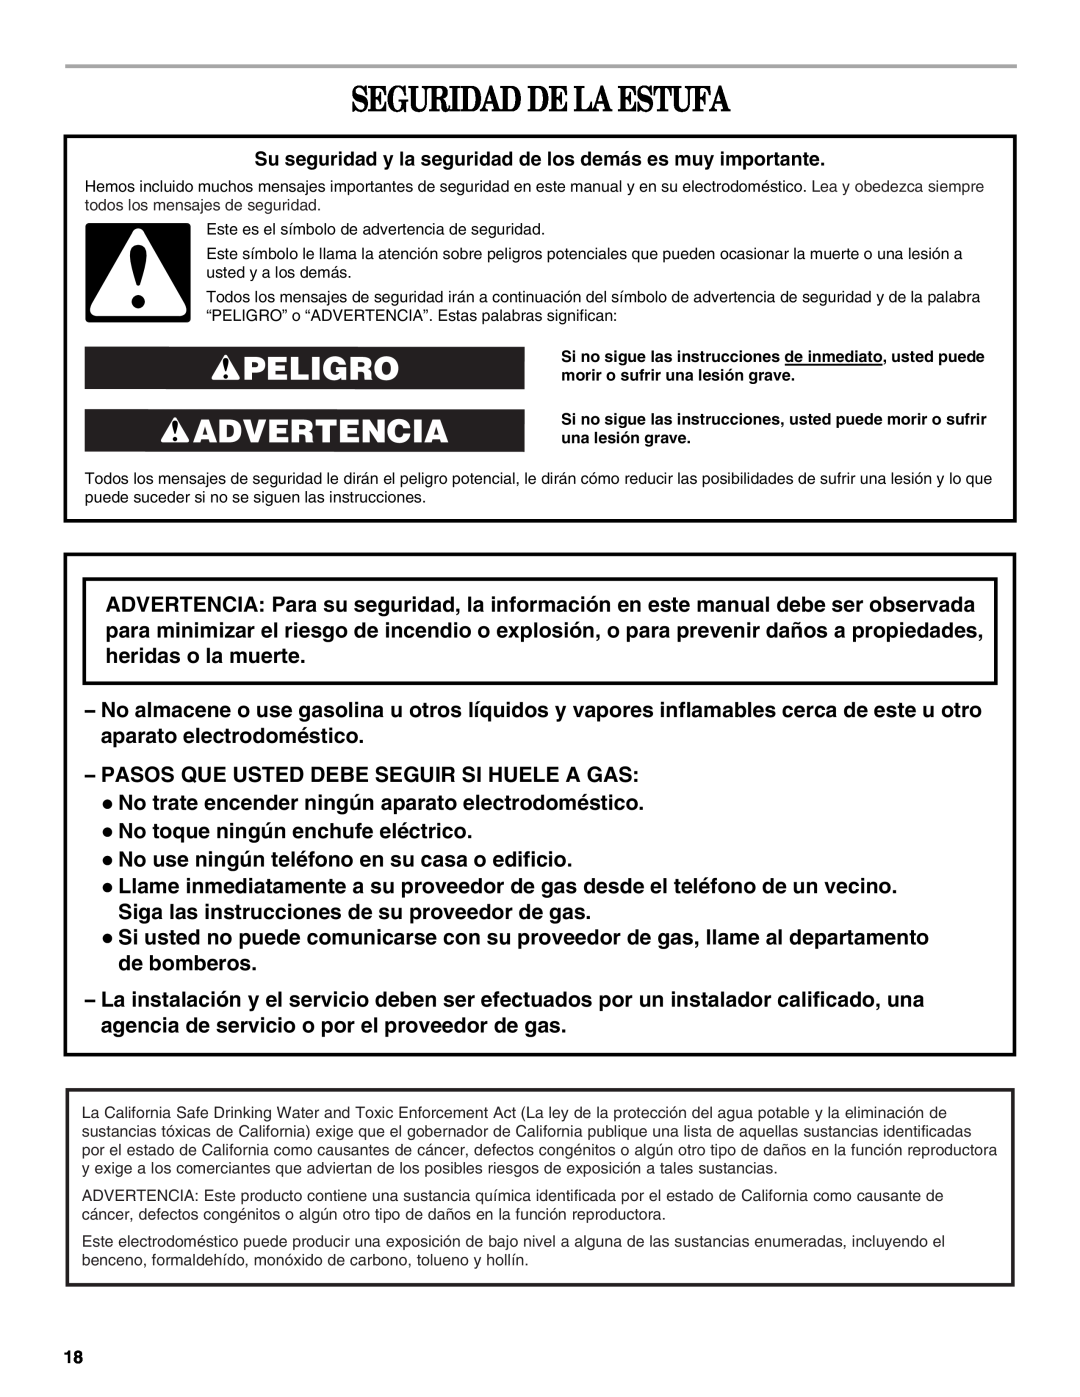 Whirlpool SF315PEPB1 manual Seguridad De La Estufa, Peligro Advertencia 